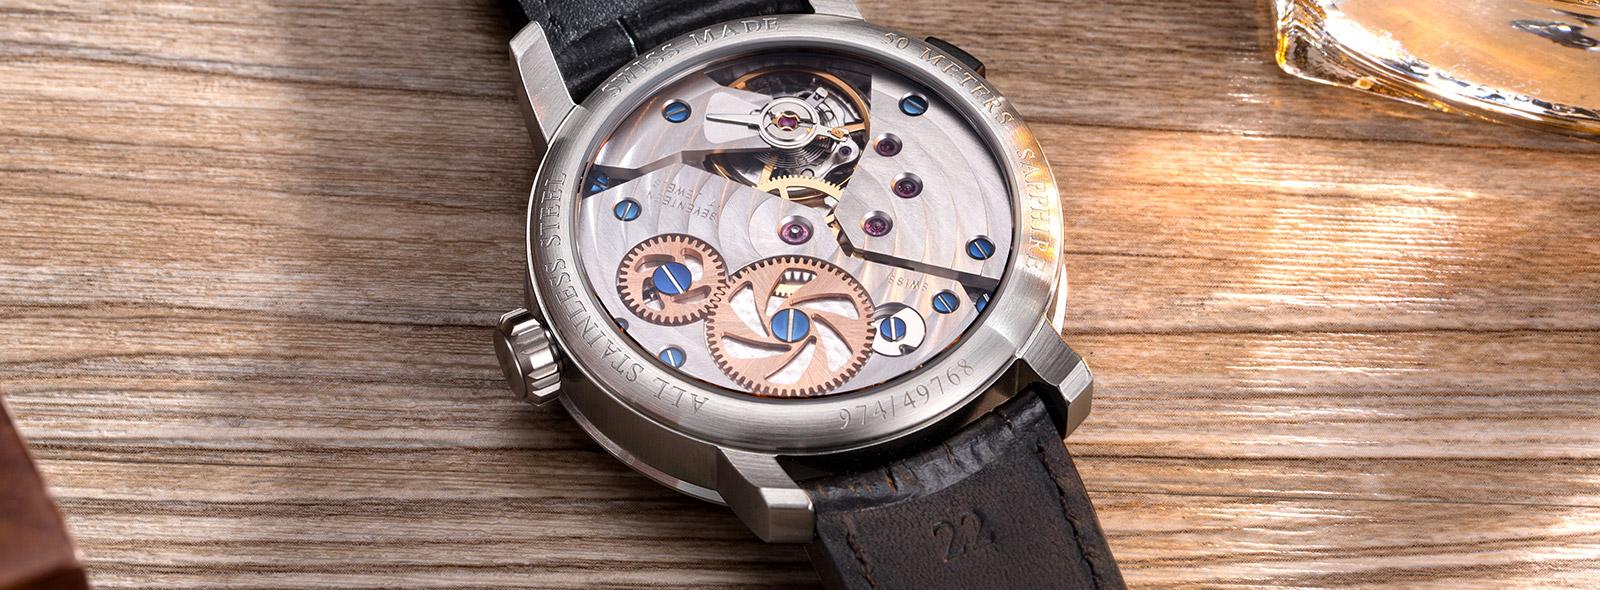 Czym różnią się rodzaje mechanizmów w zegarkach? Porównanie: Ronda, ETA,  Miyota | Zegarownia.pl Blog